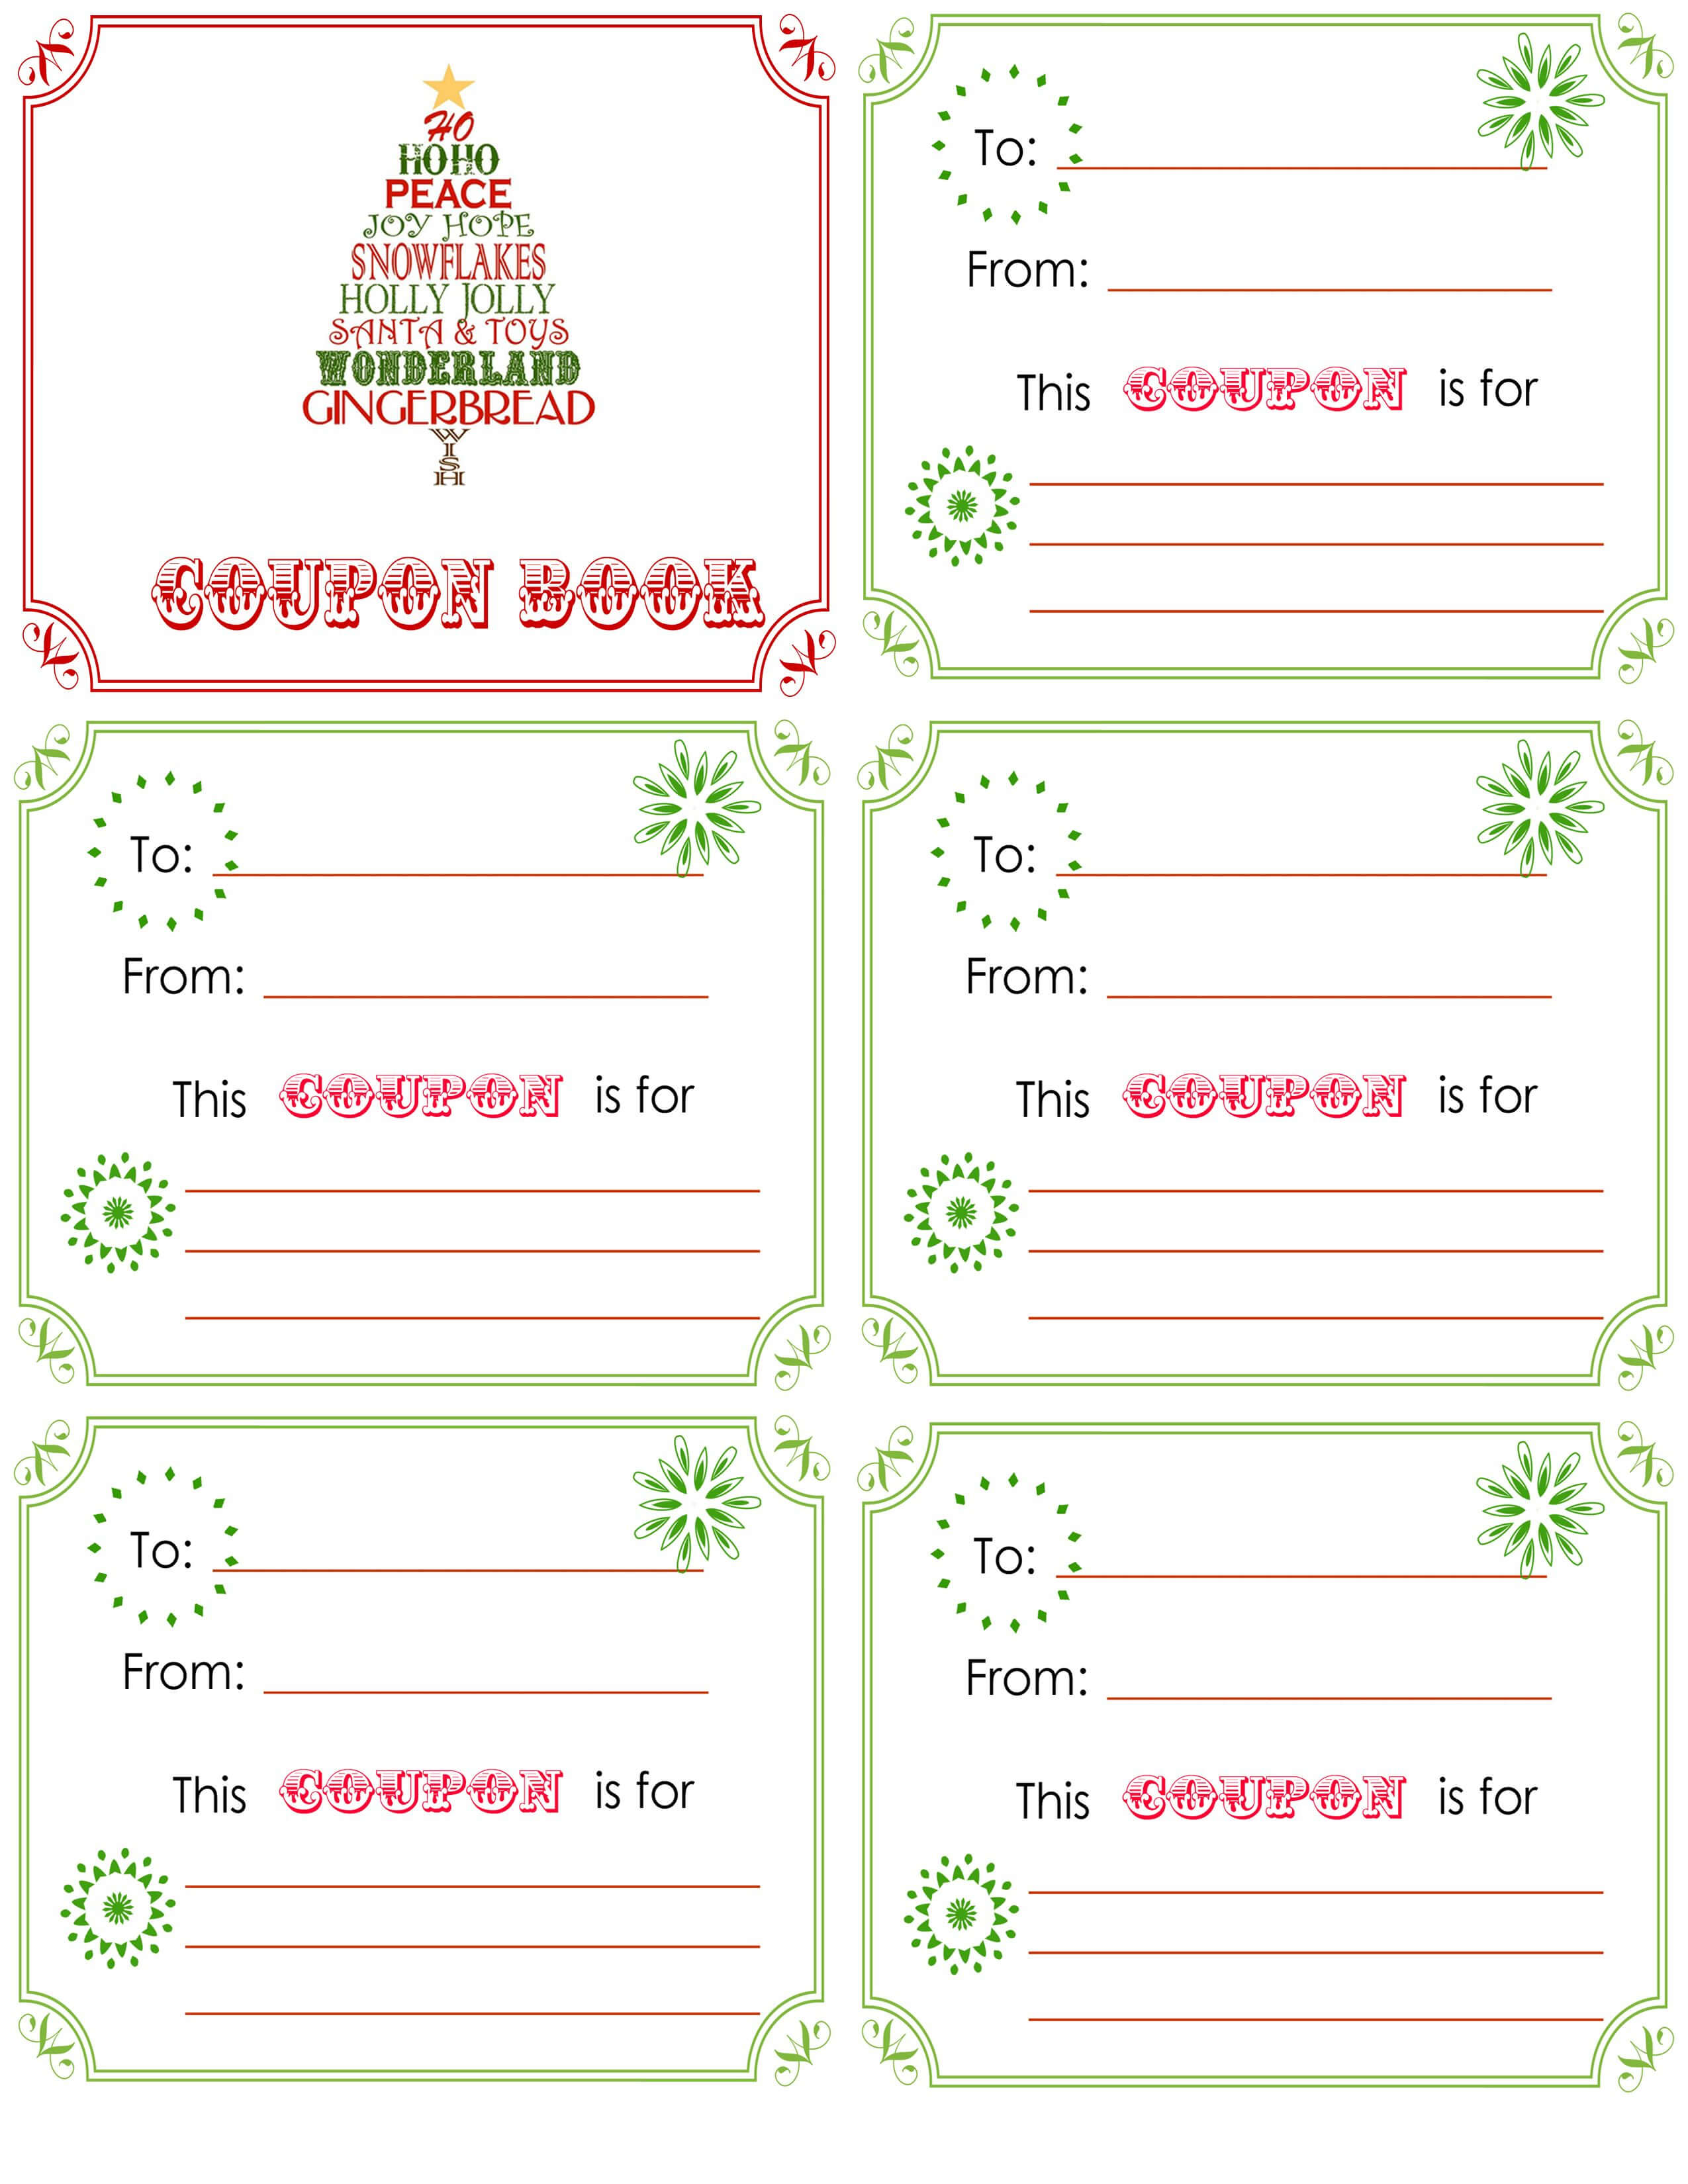 printable-christmas-coupon-book-template-christmas-card-inside-blank